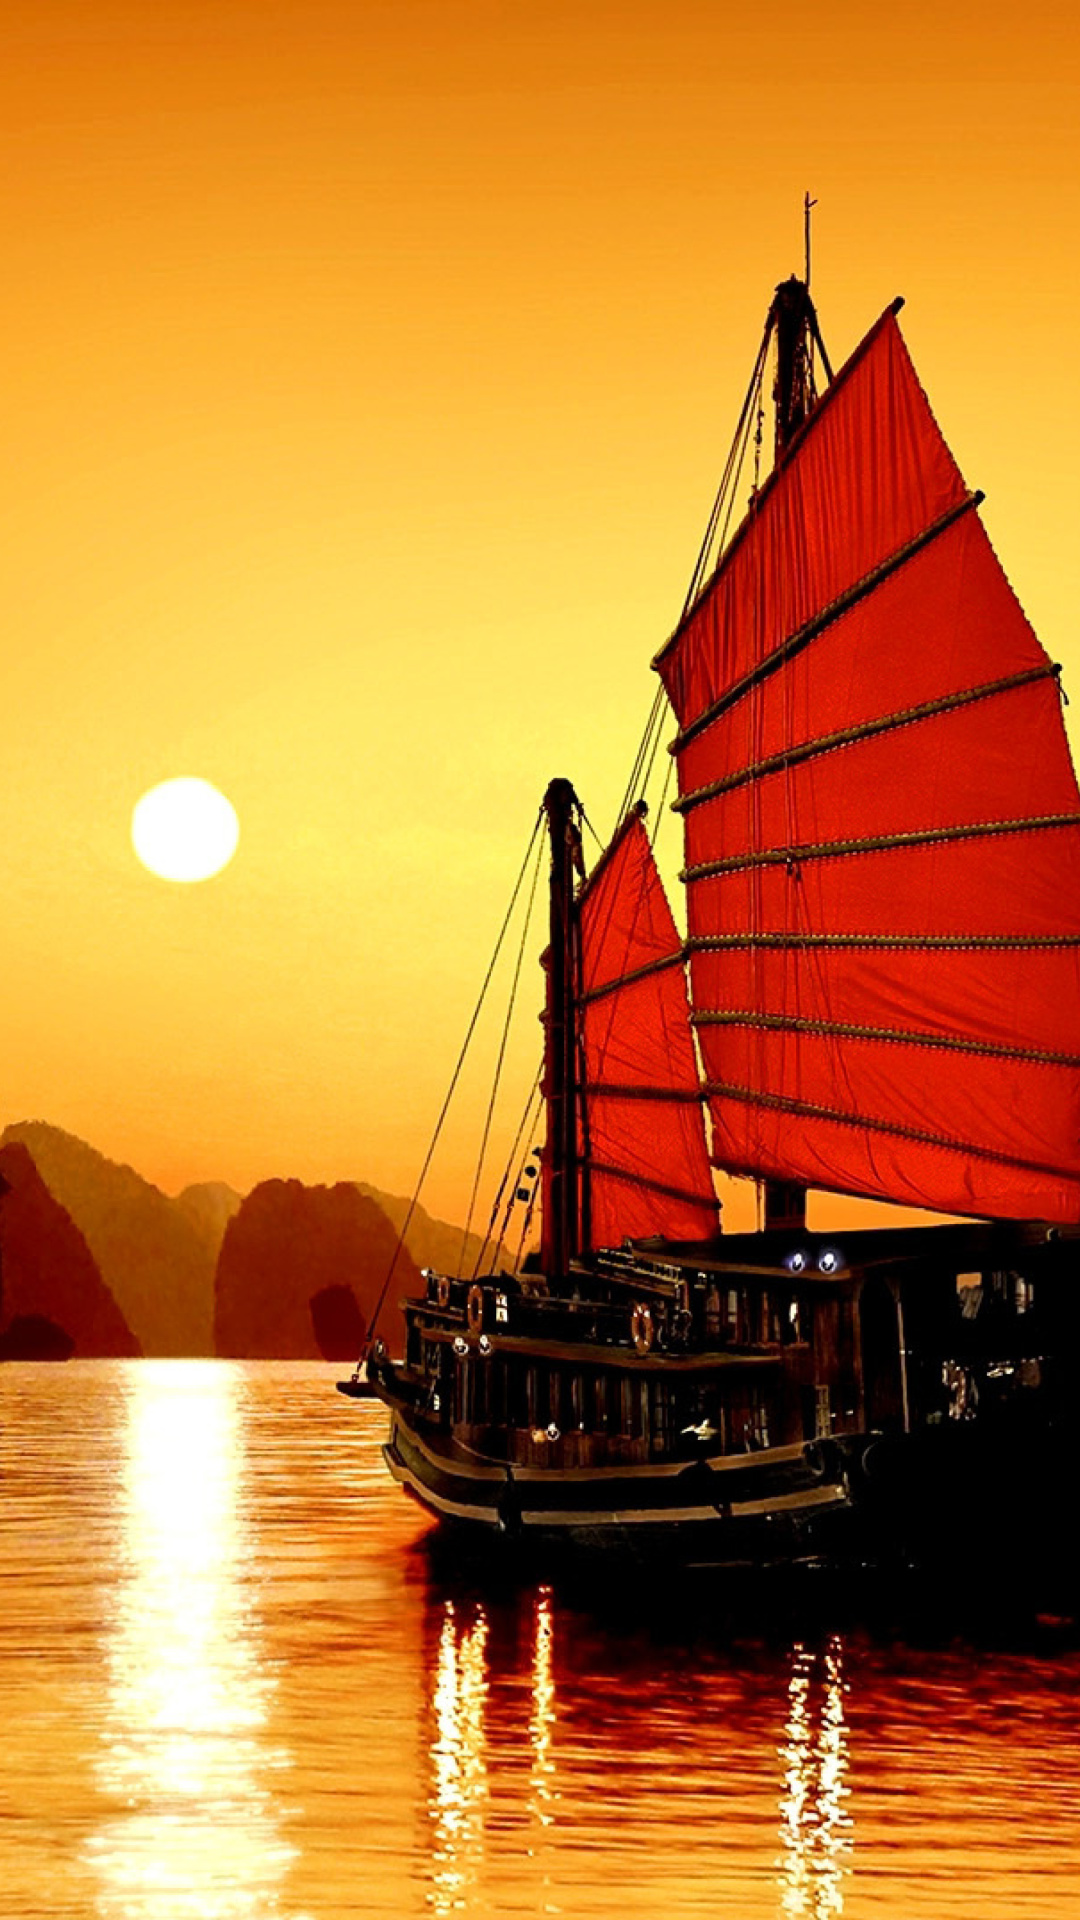 Halong Bay, Vietnama in Sunset screenshot #1 1080x1920